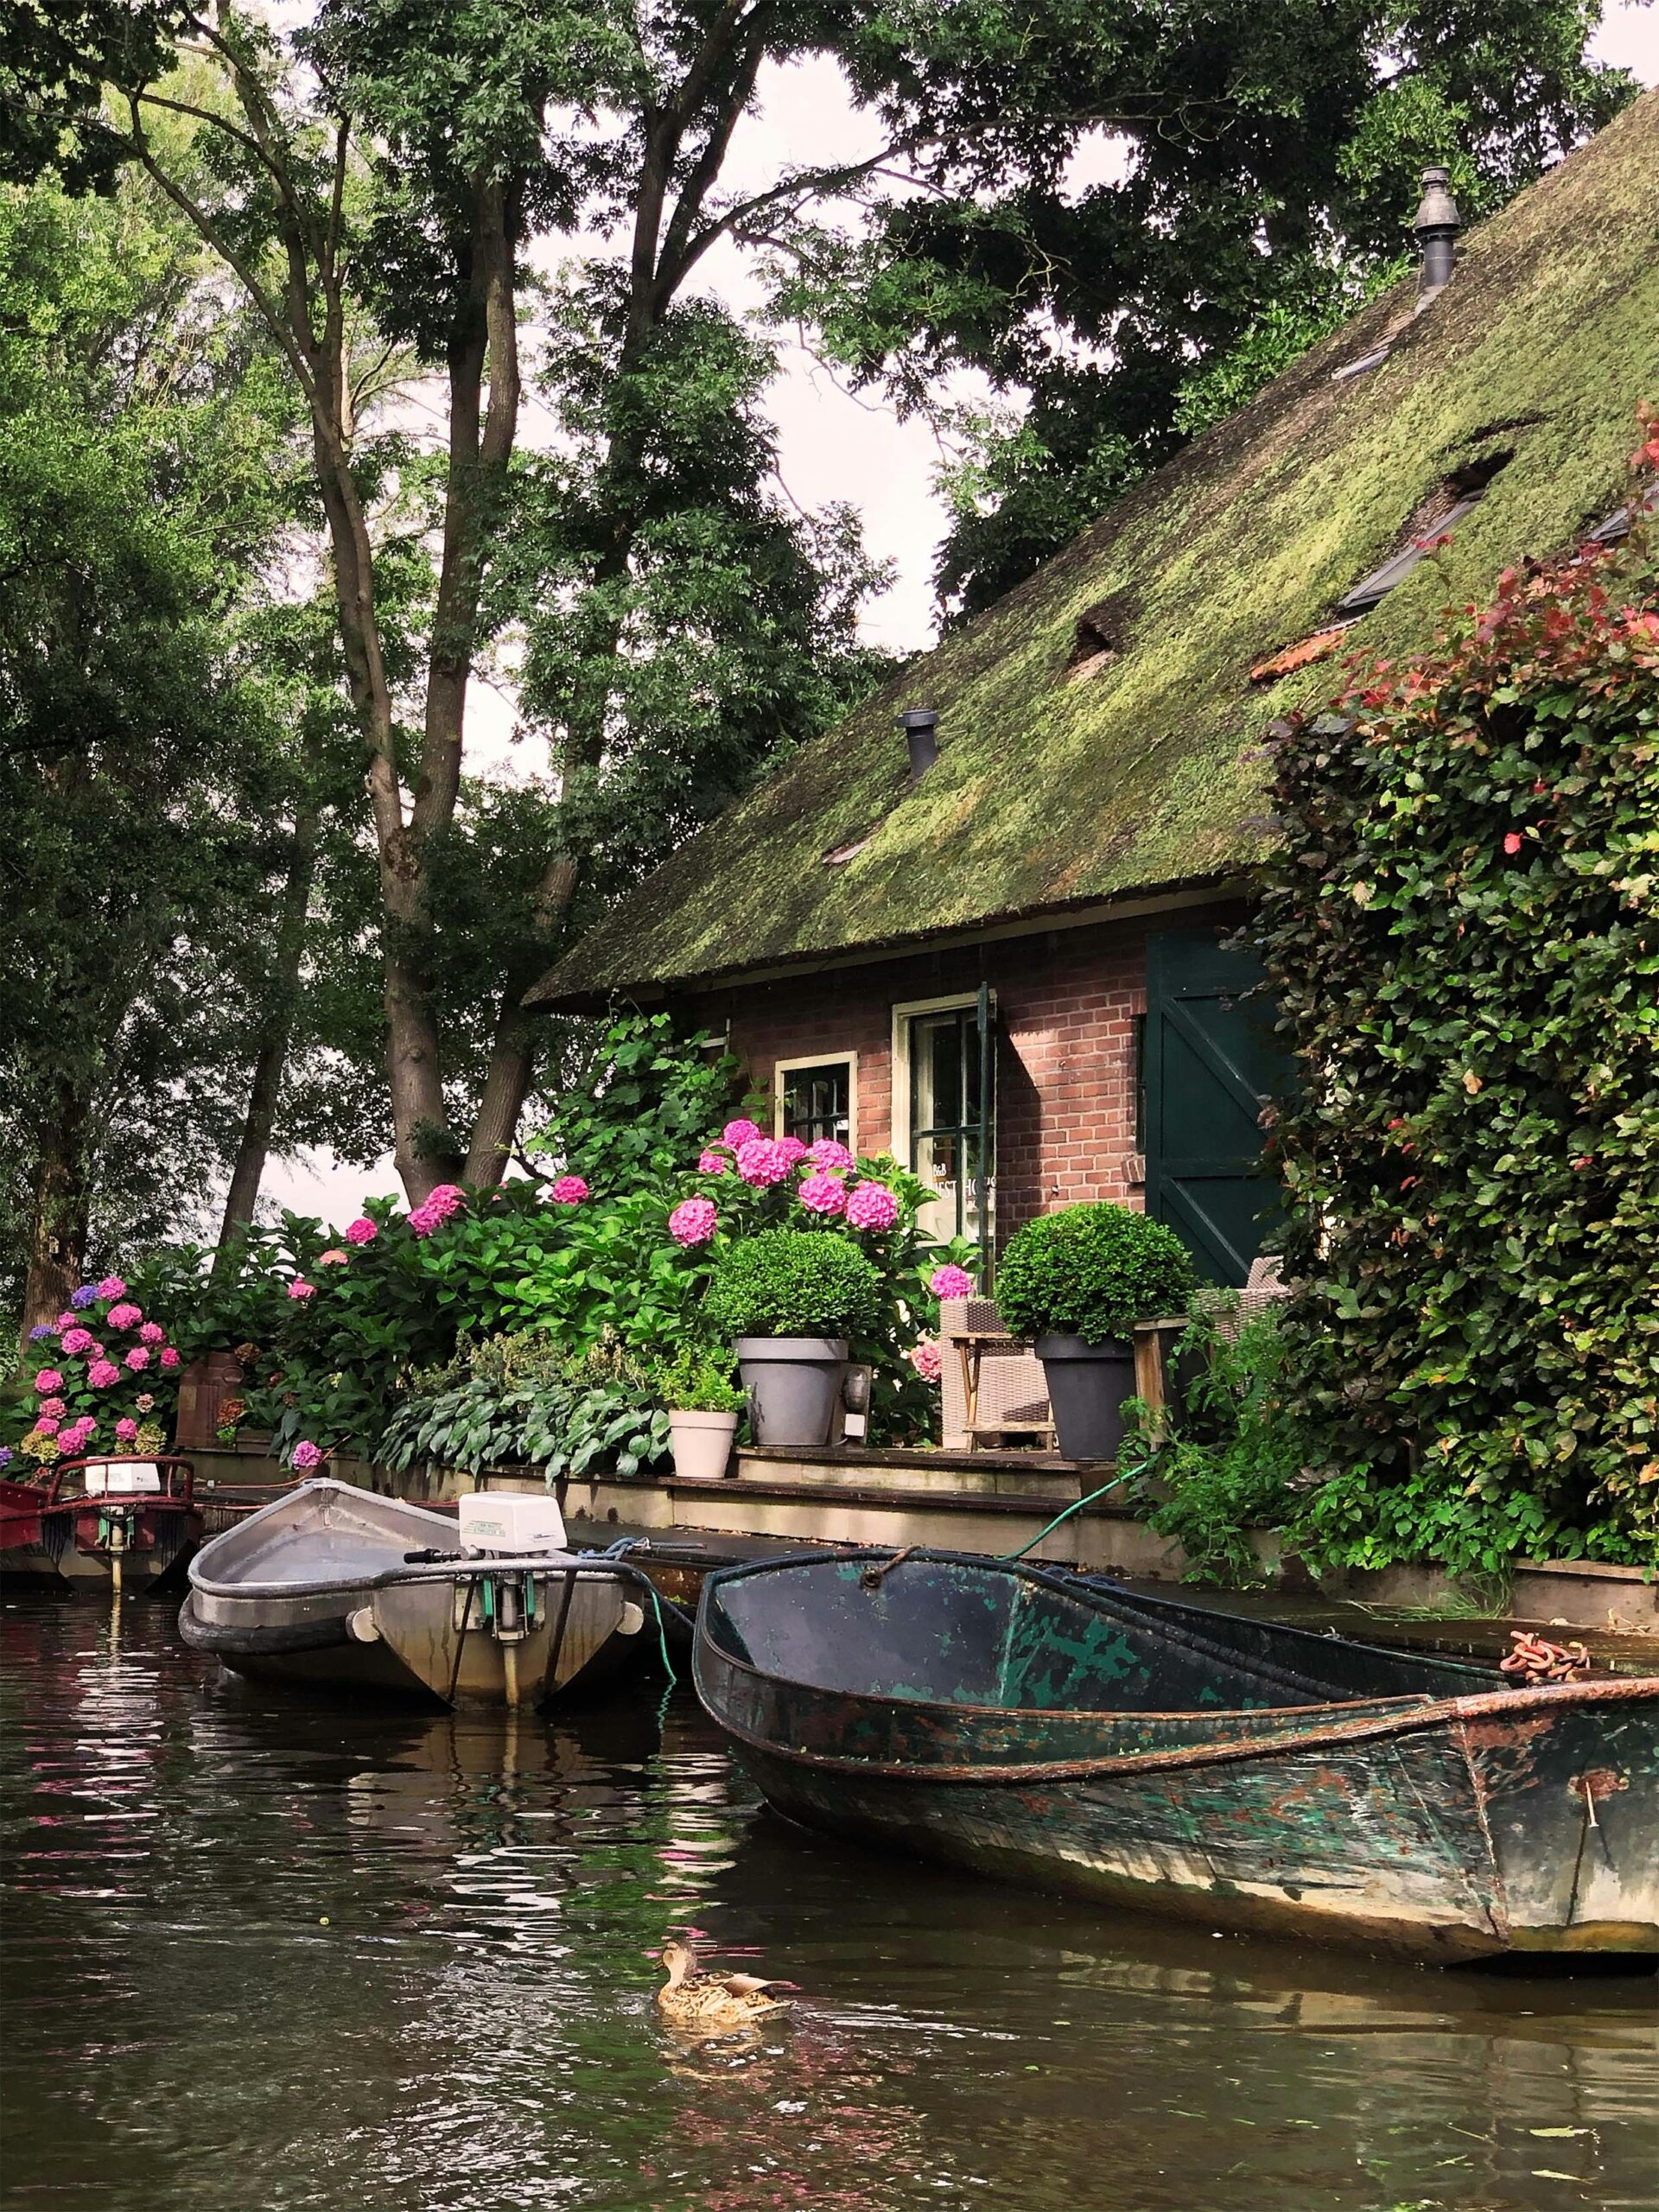 De mooiste plekken voor bootje huren in Nederland